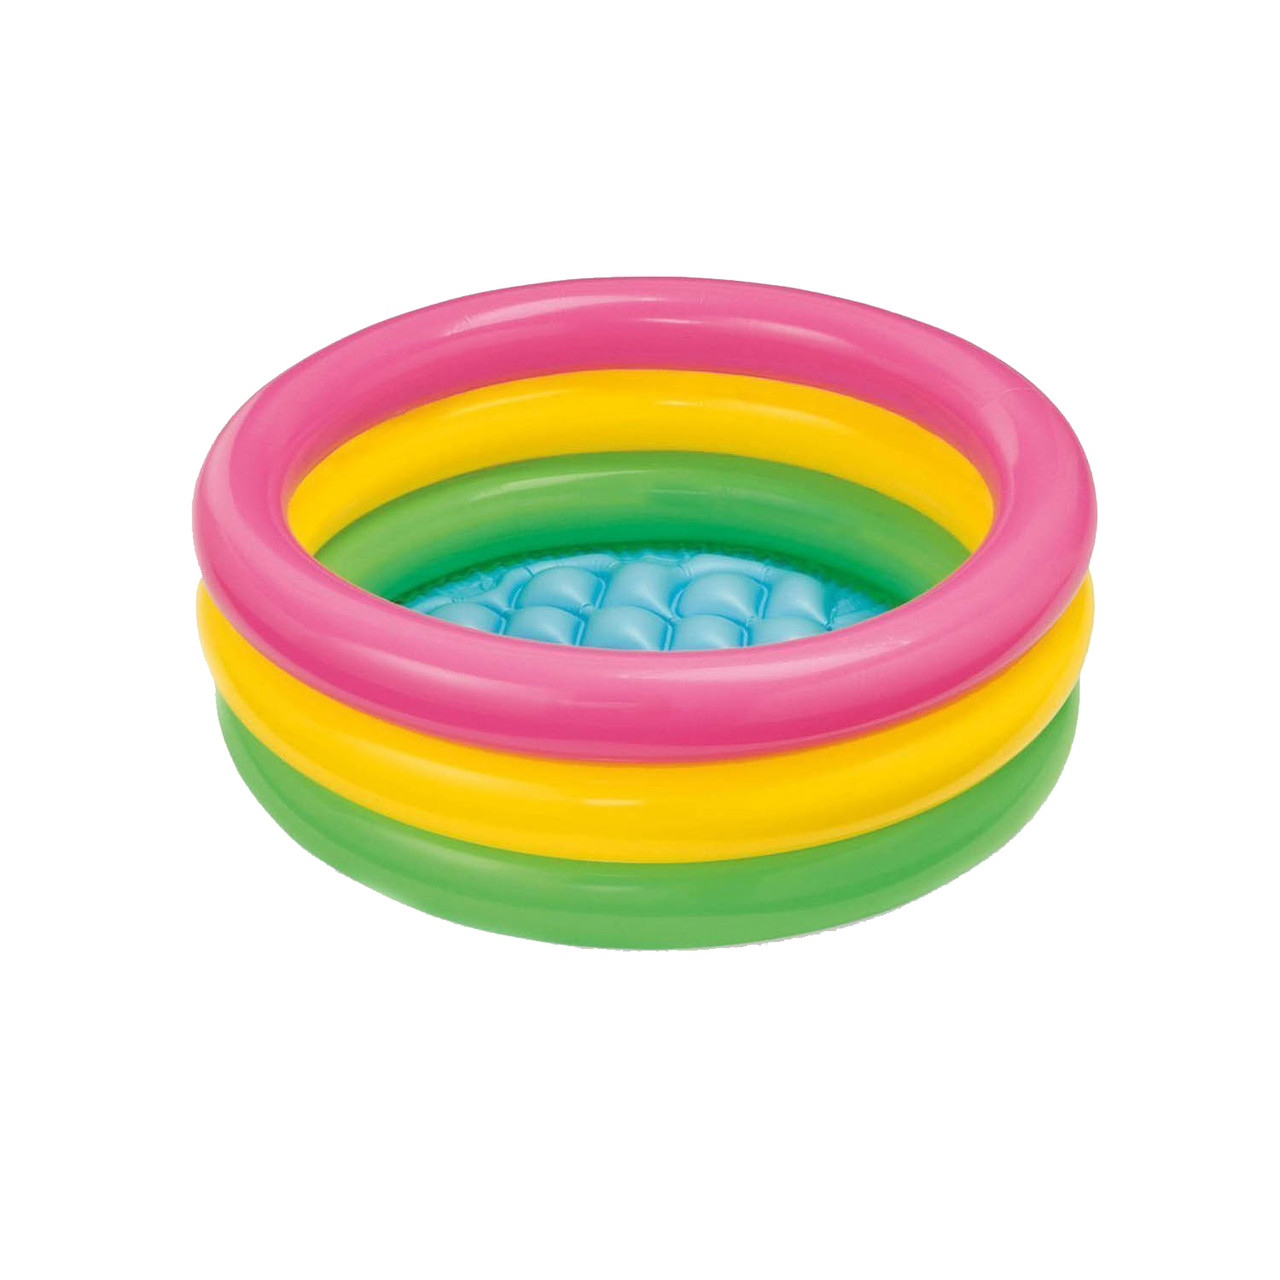 Дитячий надувний басейн Intex 57107-3 Веселка 61 х 22 см з кульками 10 шт тентом підстилкою насосом